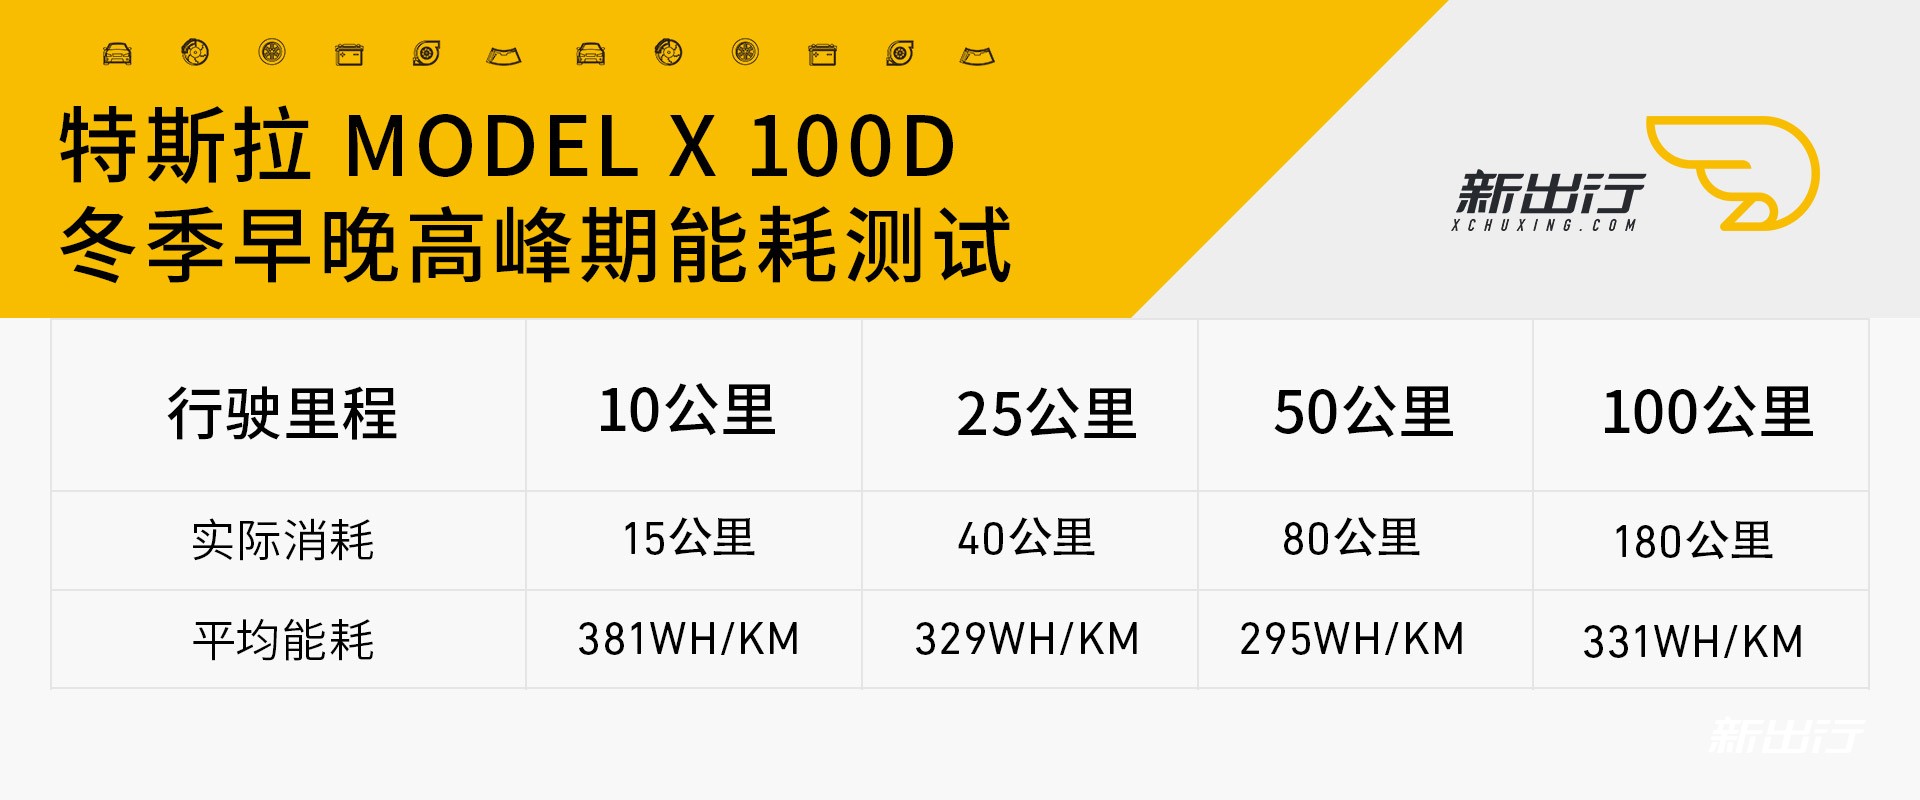 特斯拉ModelX100D早晚高峰期100公里测试.jpg